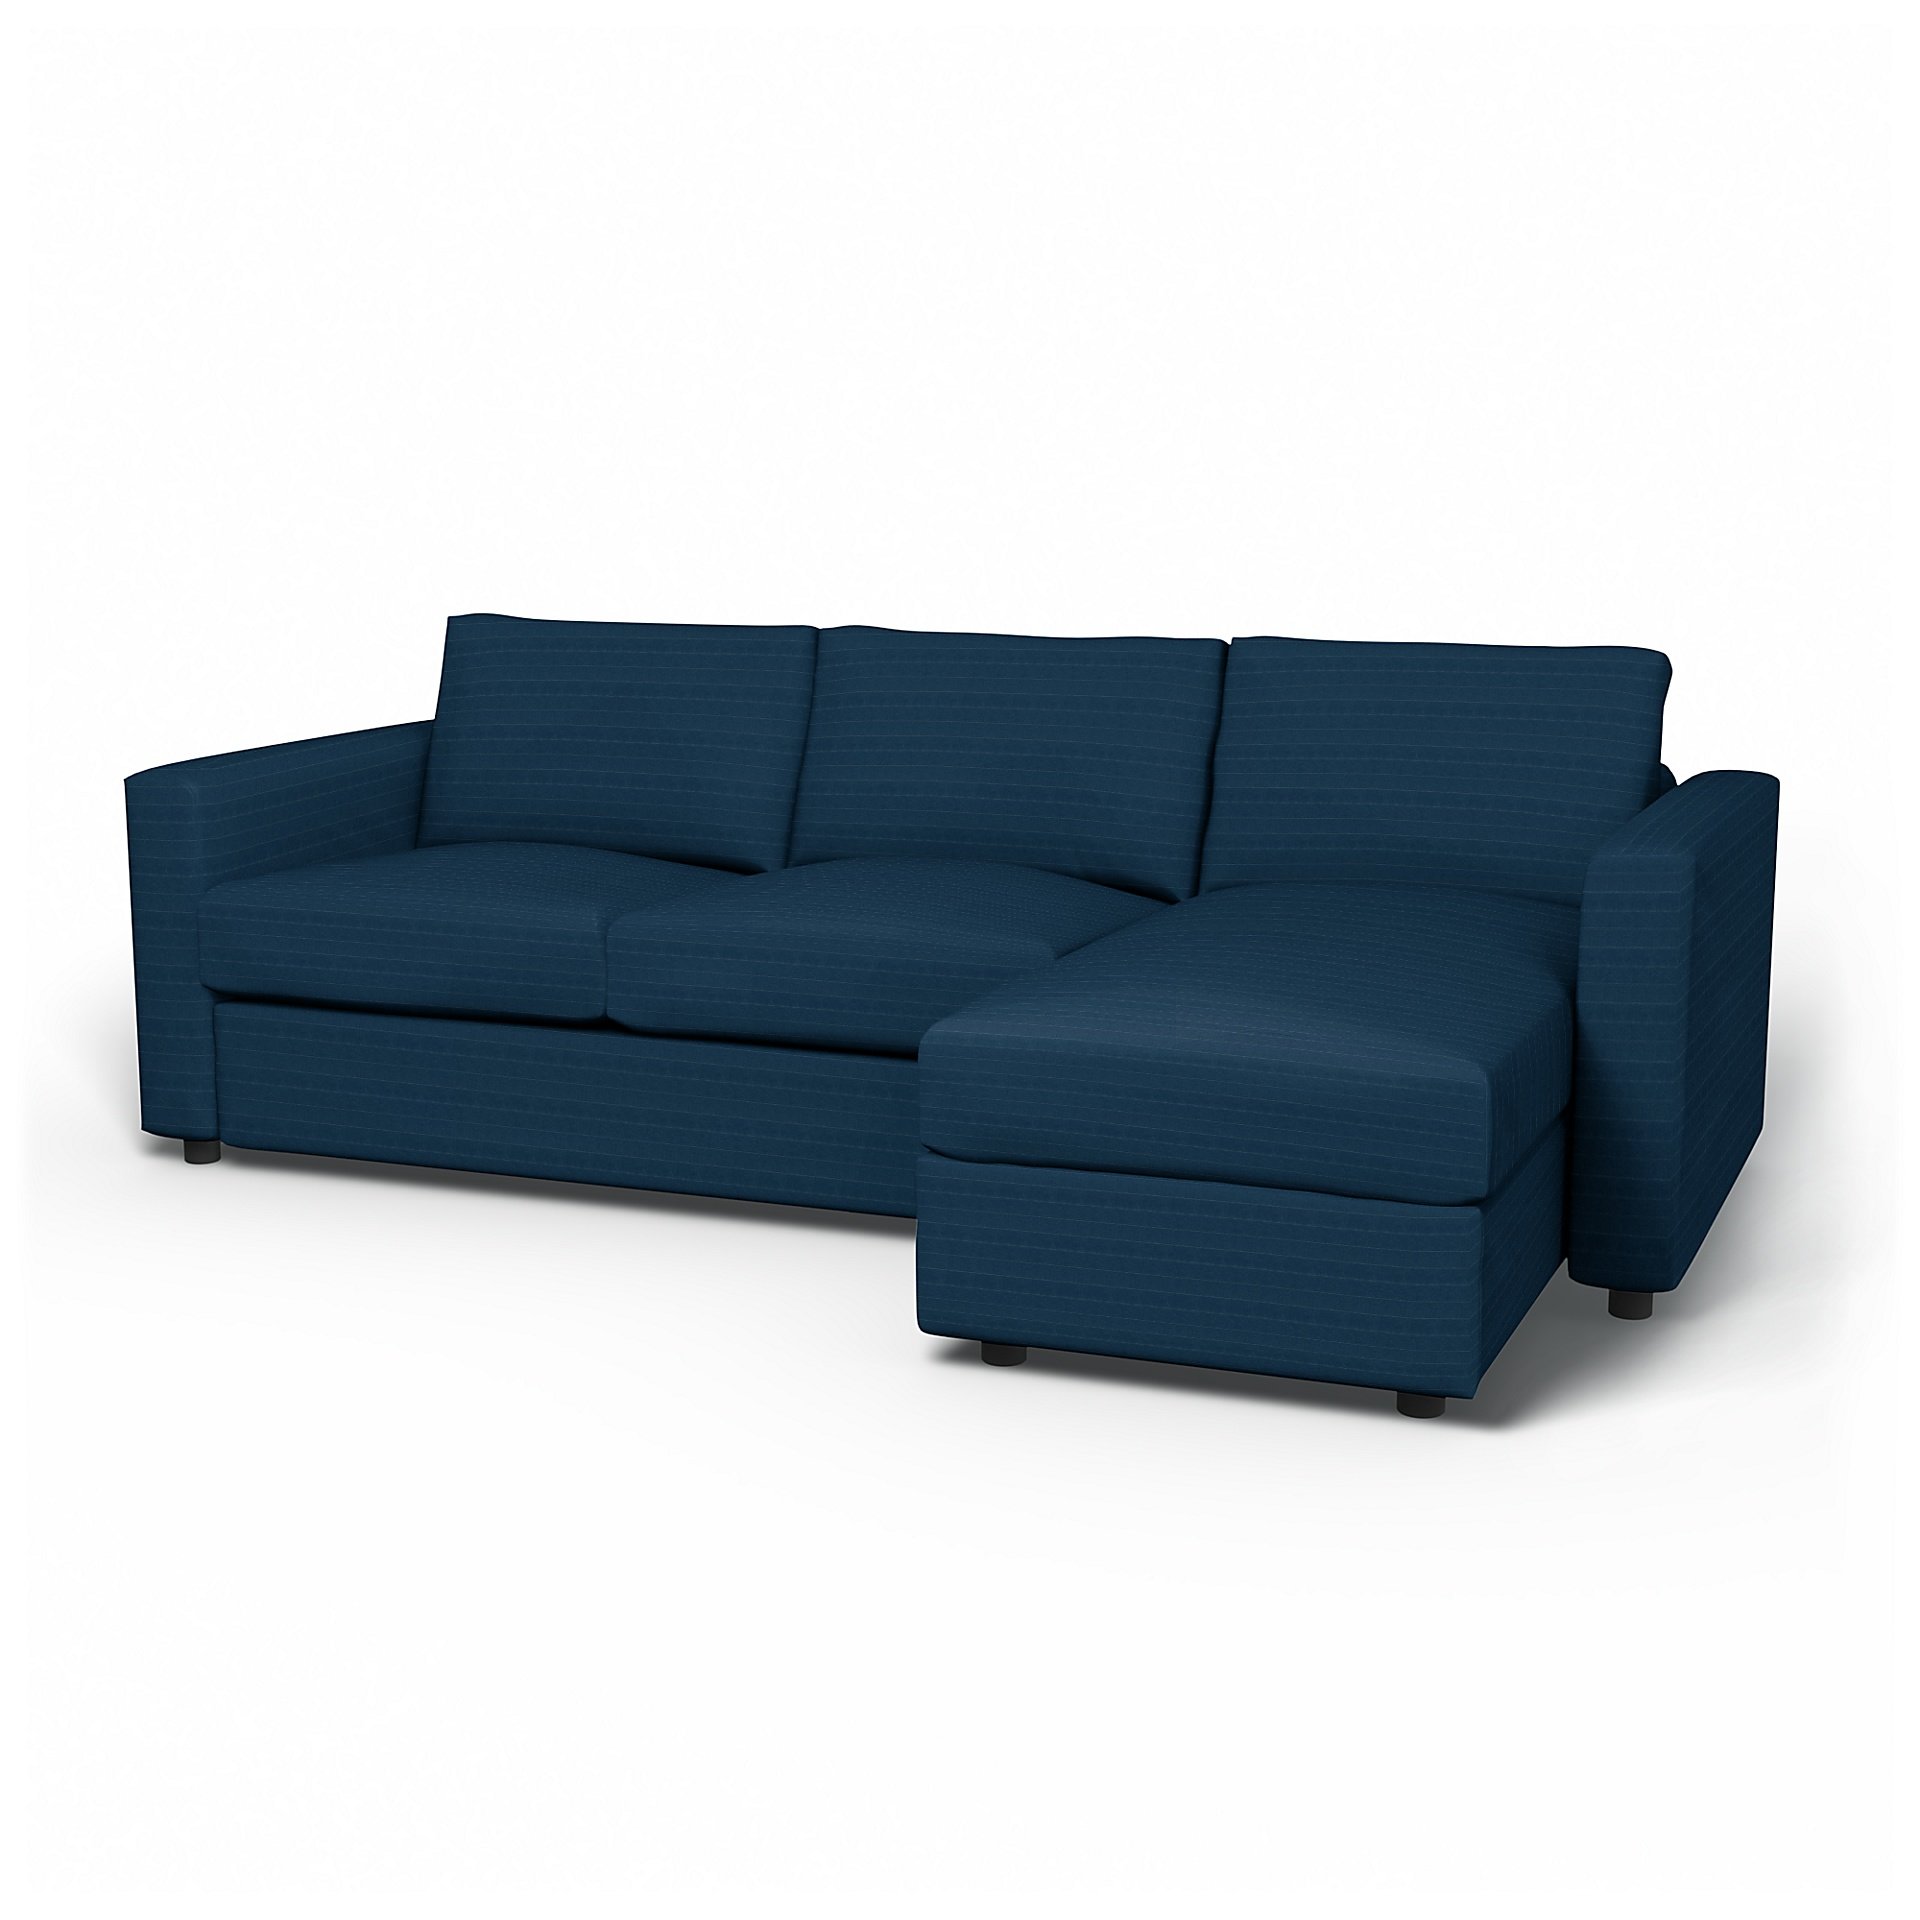 IKEA - Vimle 2 Seater Sofa with Chaise Cover, Denim Blue, Velvet - Bemz